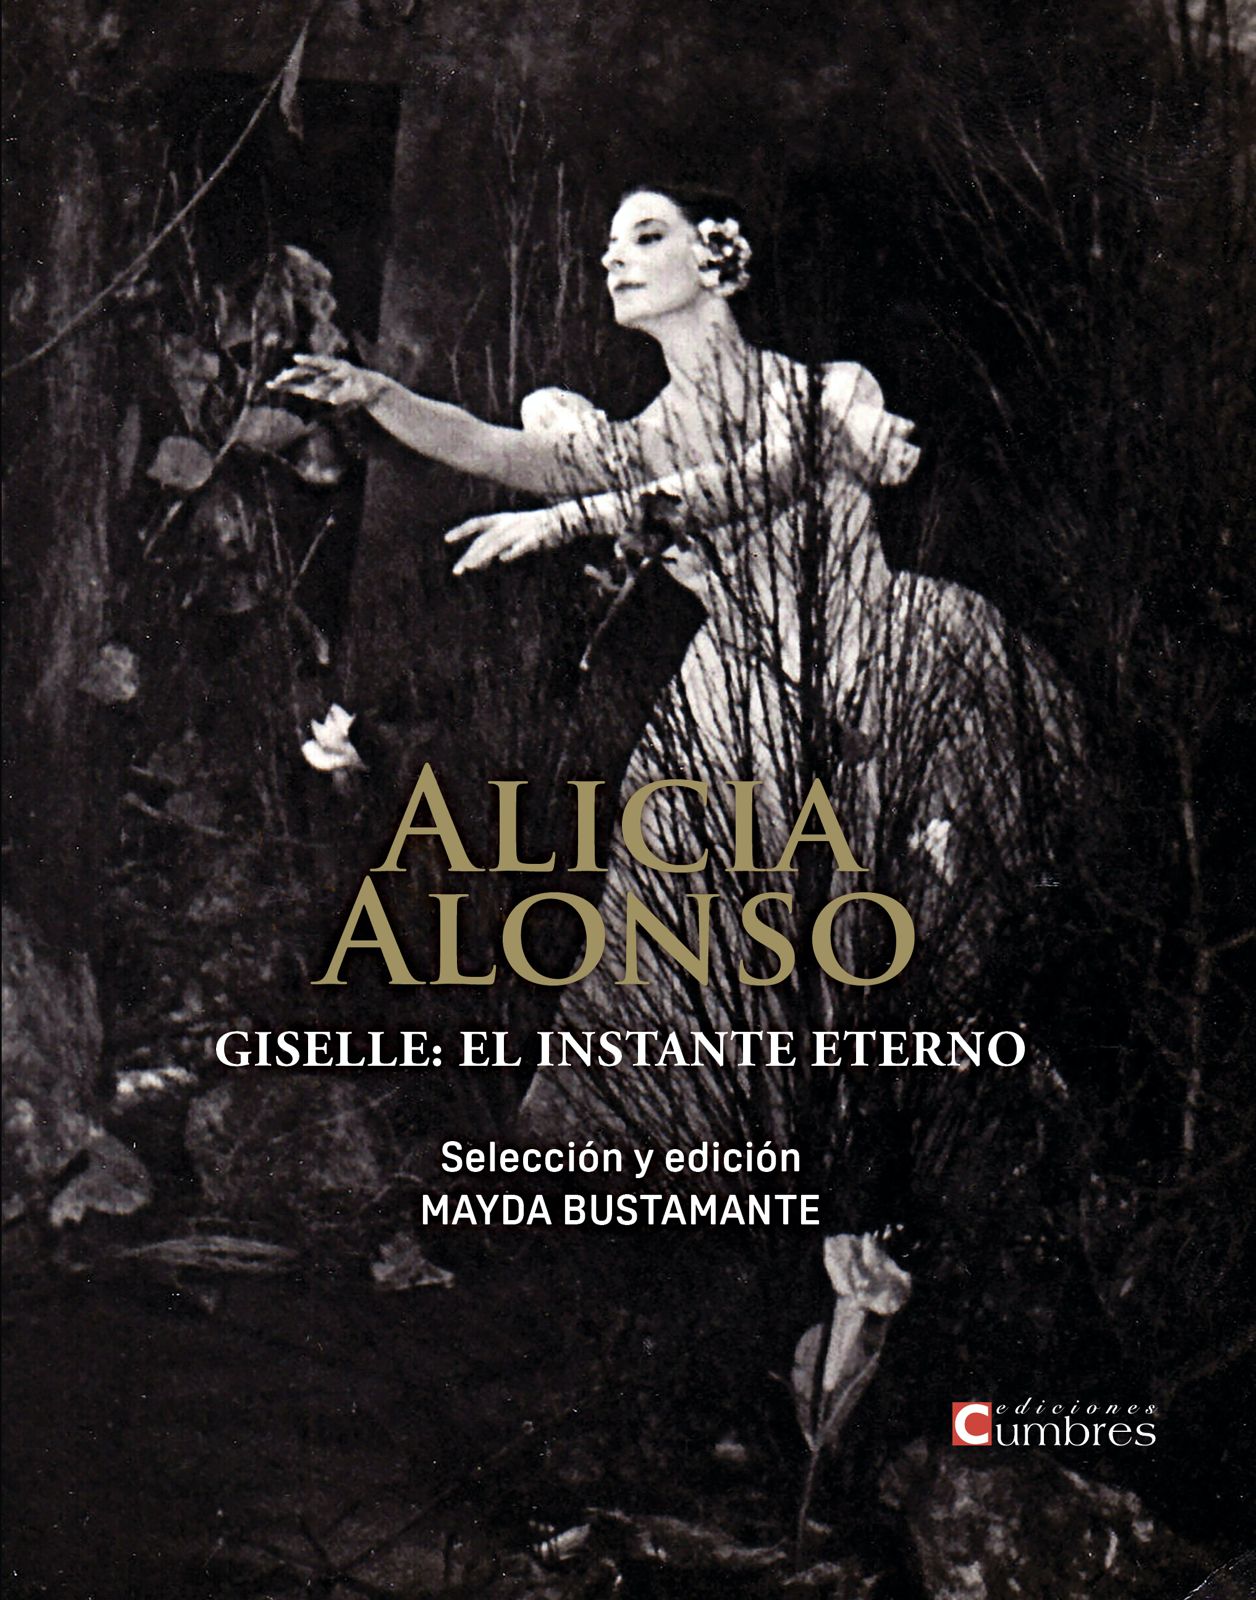 Portada libro 'Alicia Alonso: para que Giselle no muera'